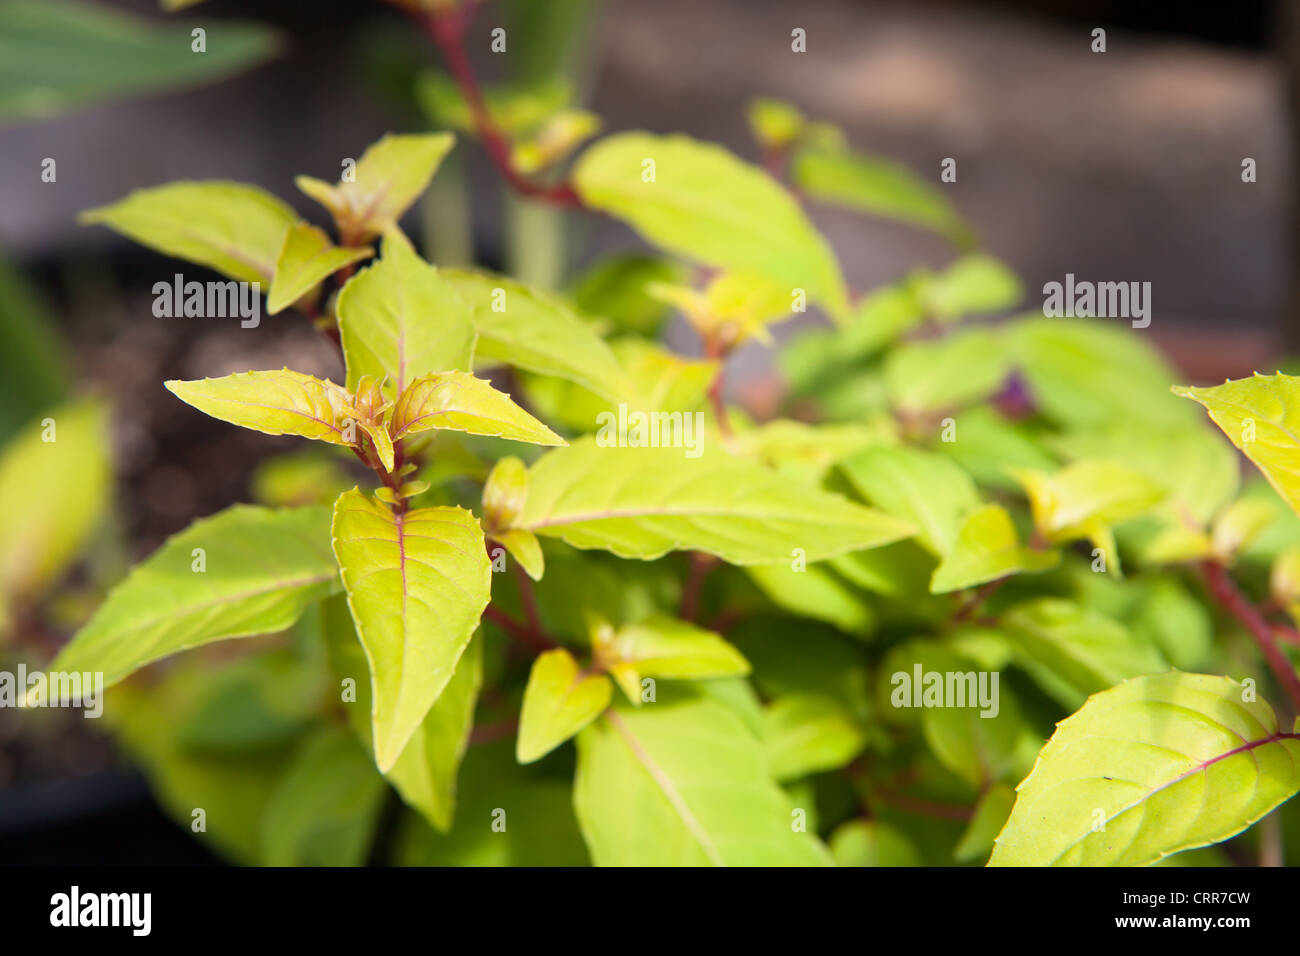 Fuchsia 'Autumn Glow' close up detail Stock Photo